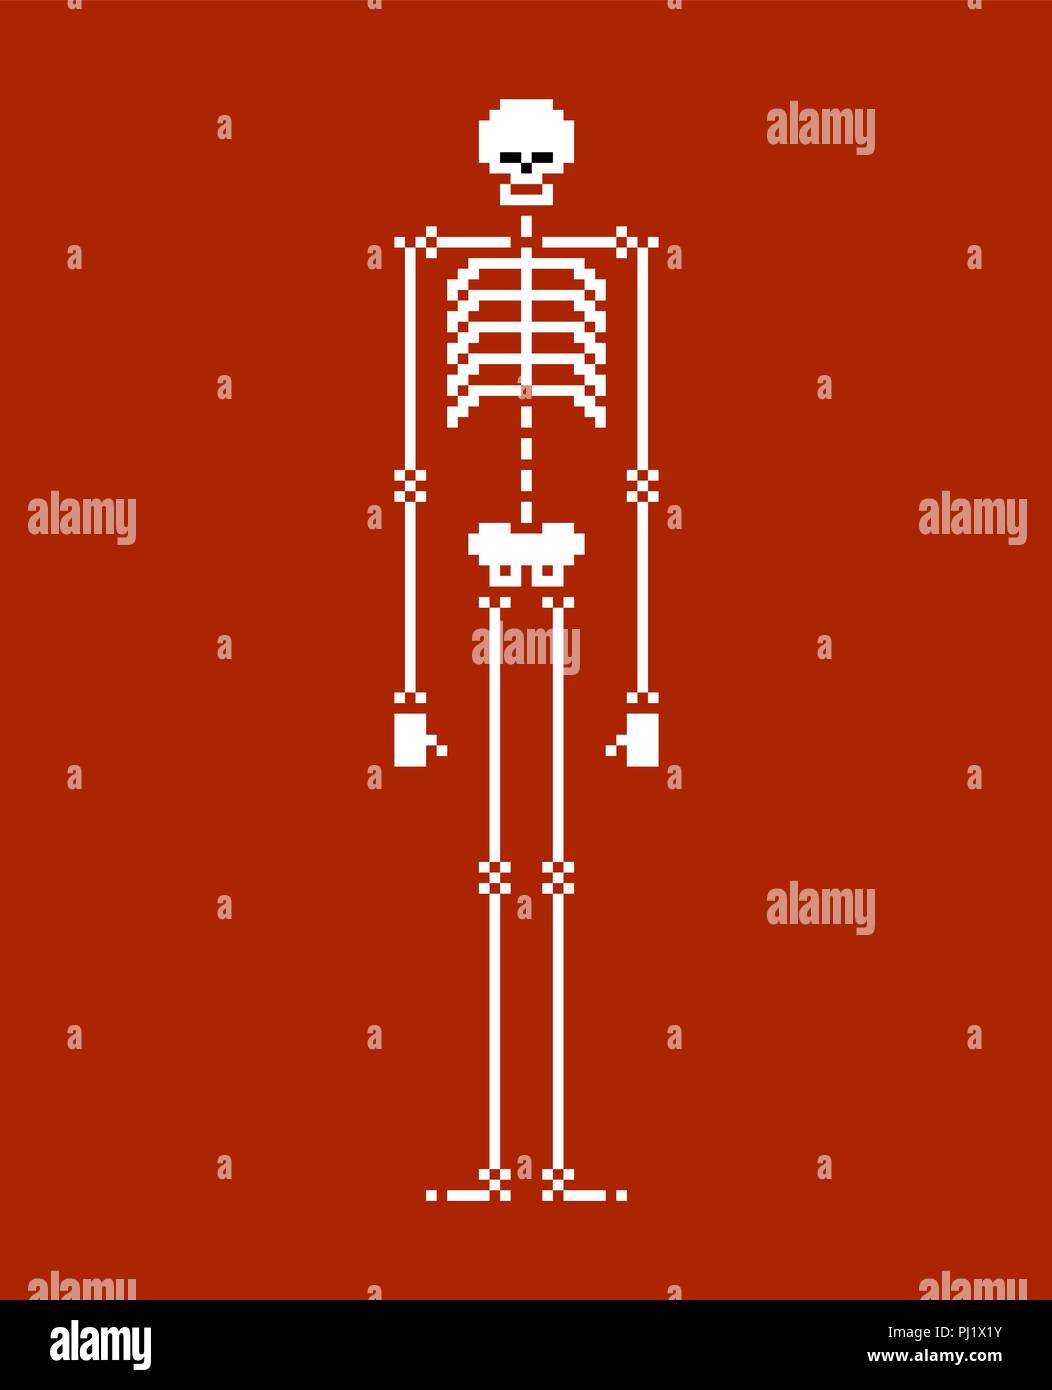 Skeleton pixel art. Skull and bone 8 bit. Vector illustration. Stock Vector